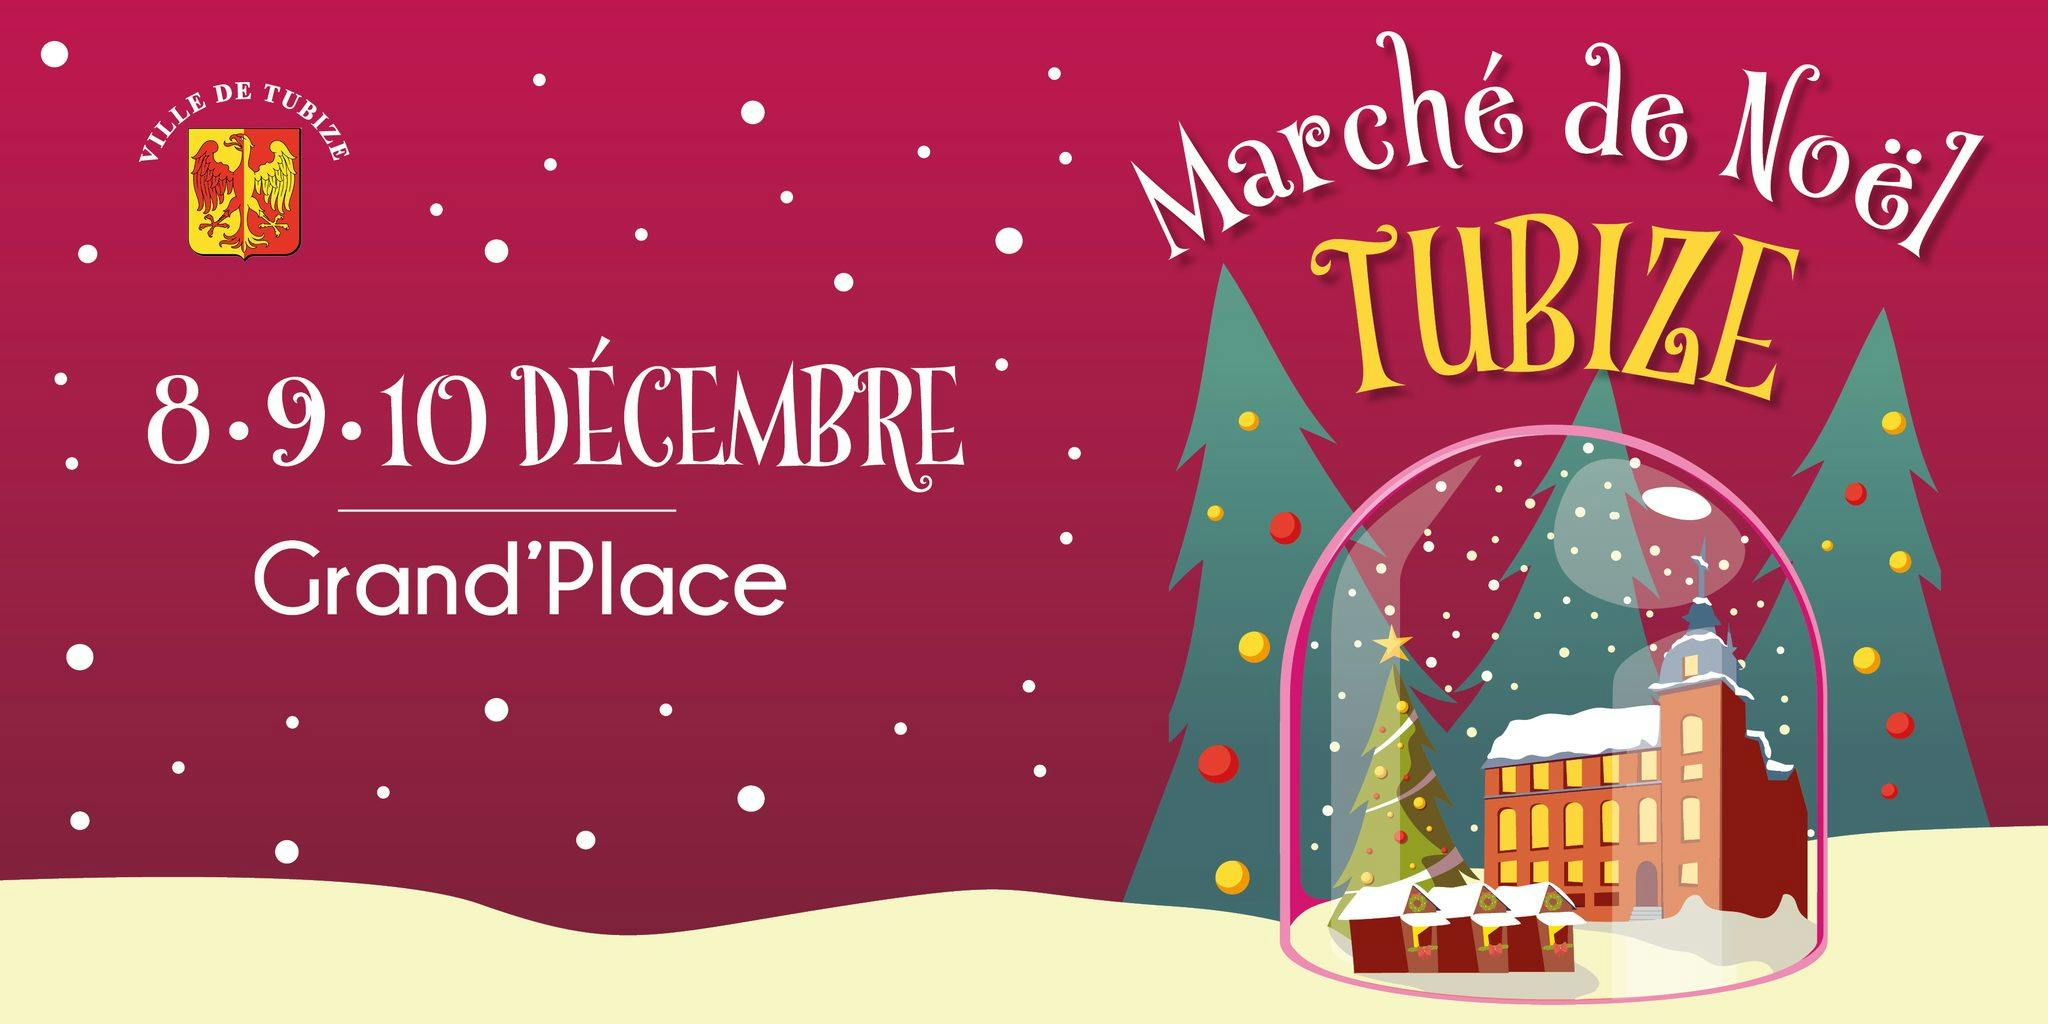 Marché de Noël de Tubize ce week-end